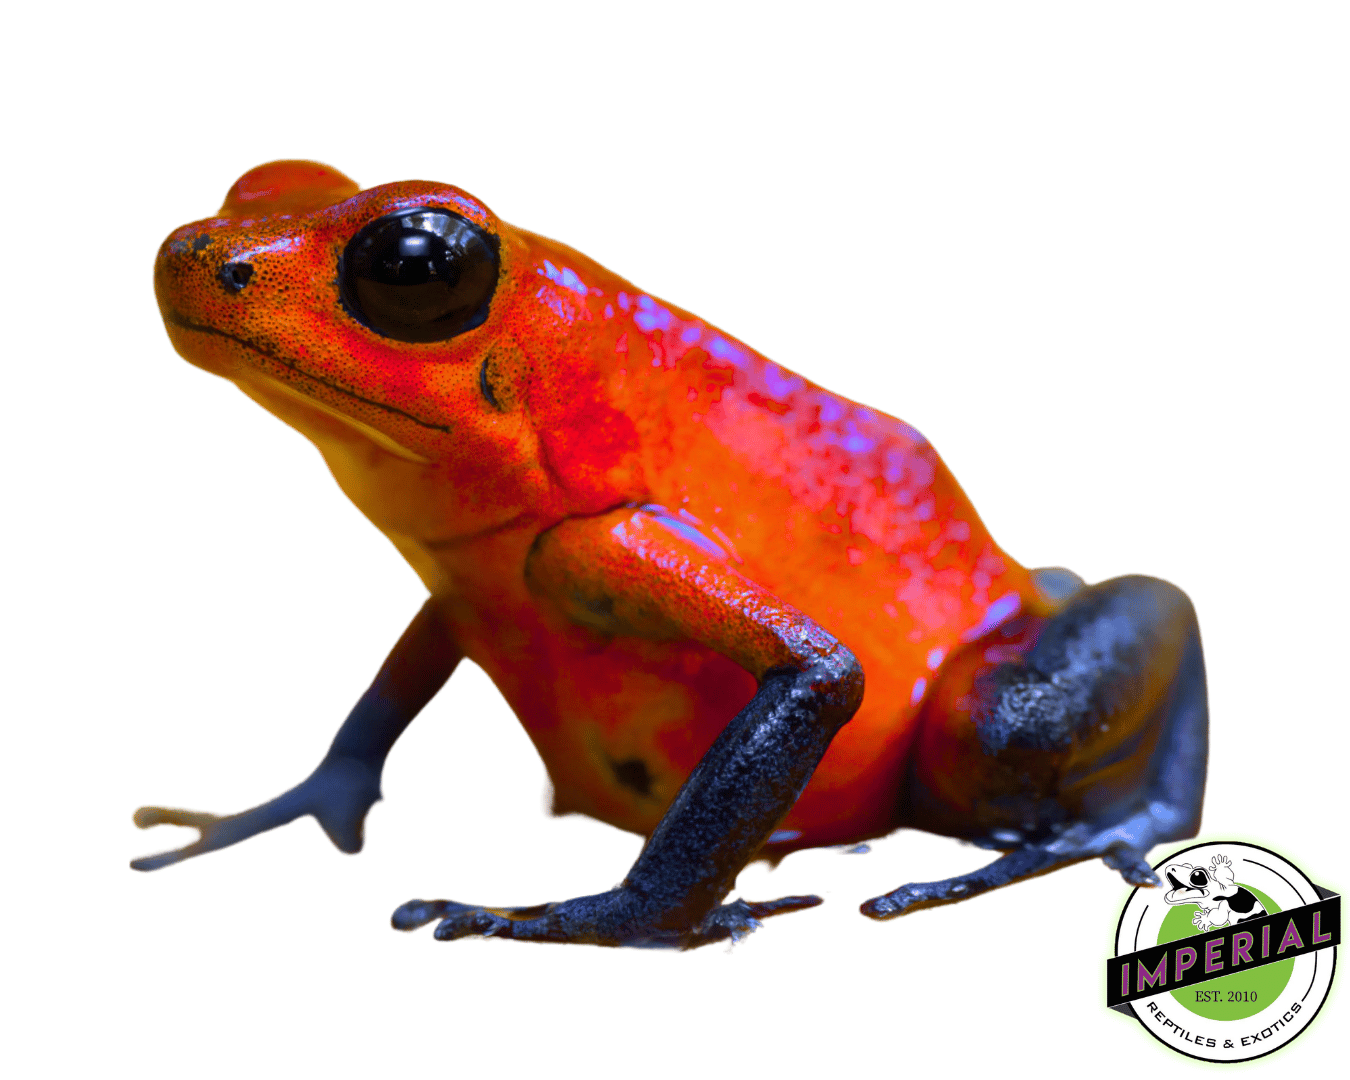 poison dart frog for sale, buy amphibians online